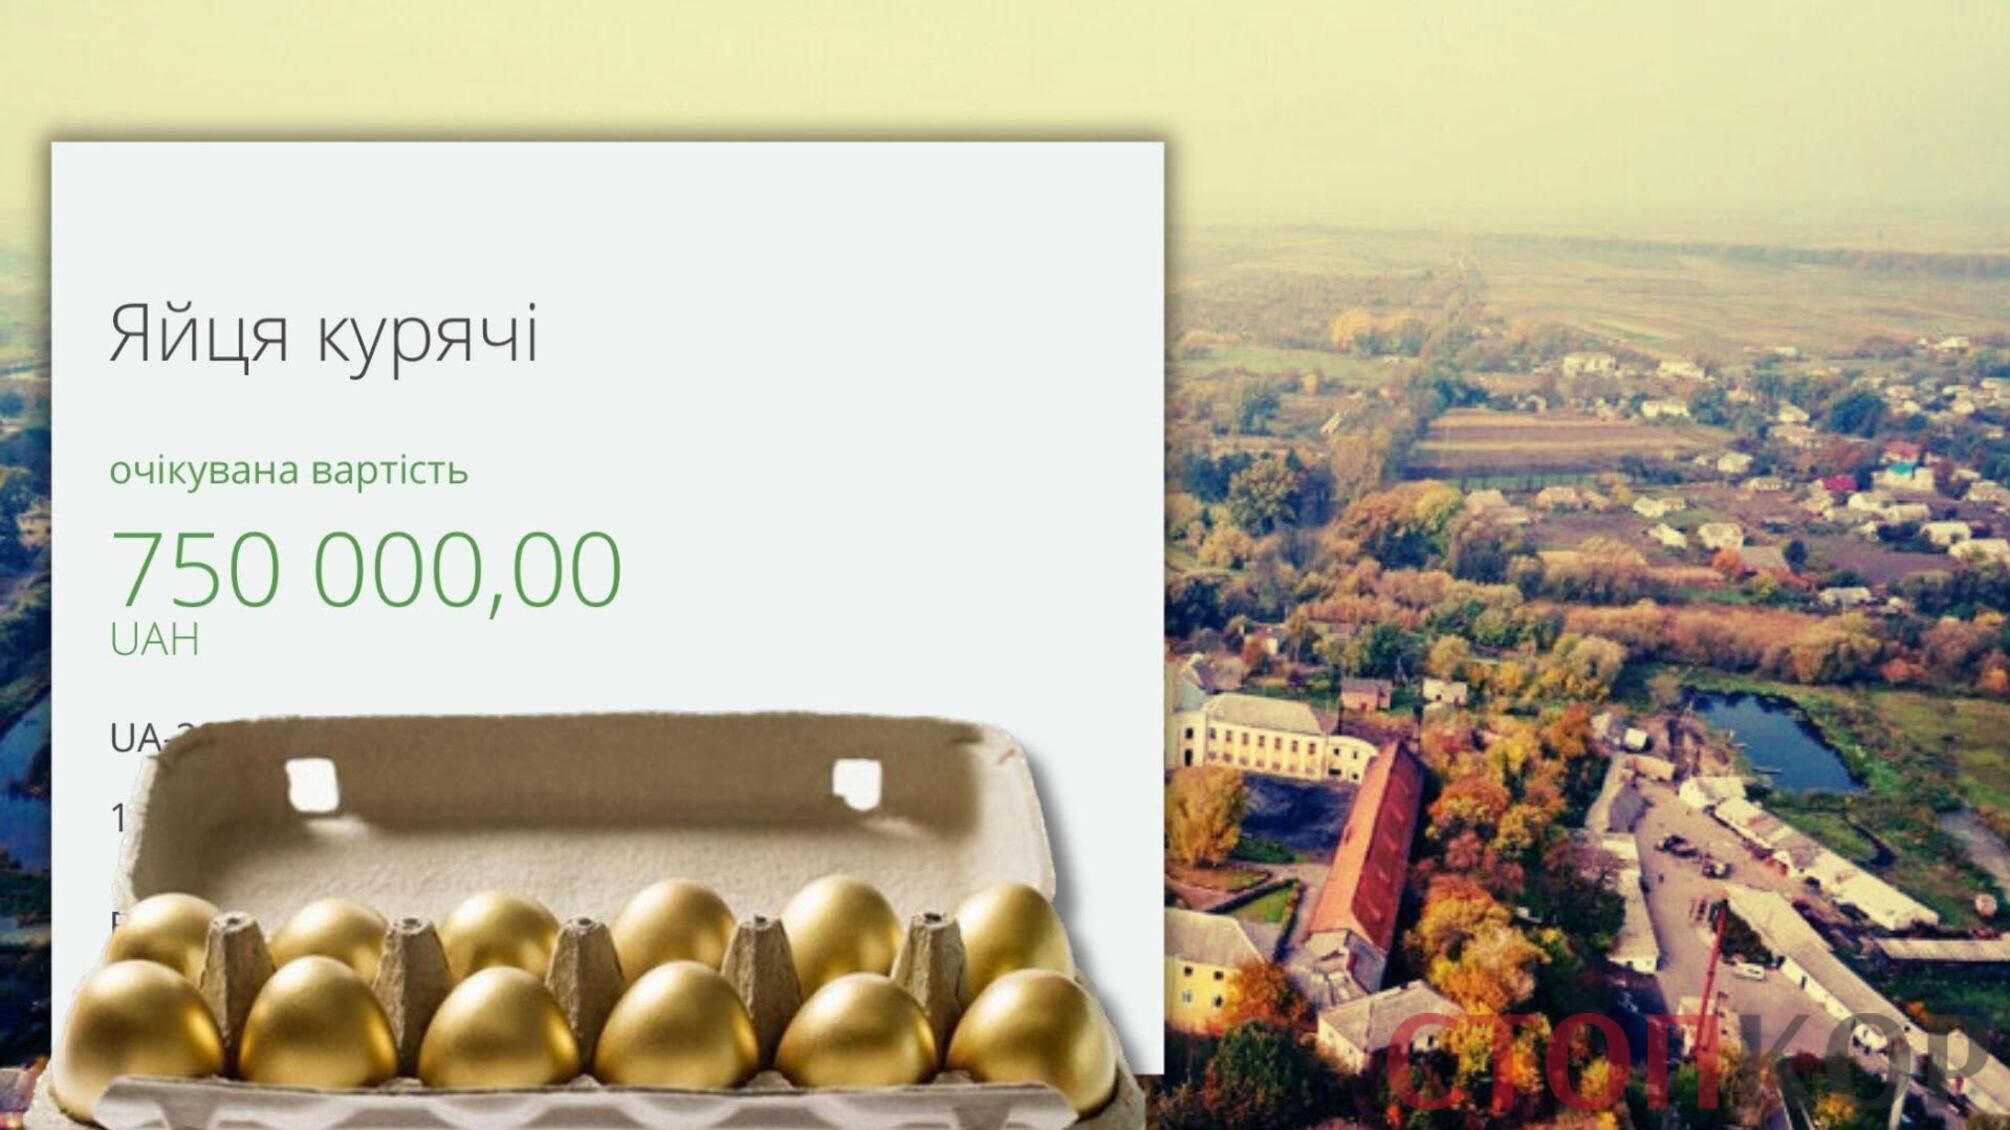  Олицька селищна рада на Волині планує закупити яйця по 50 грн за штуку 